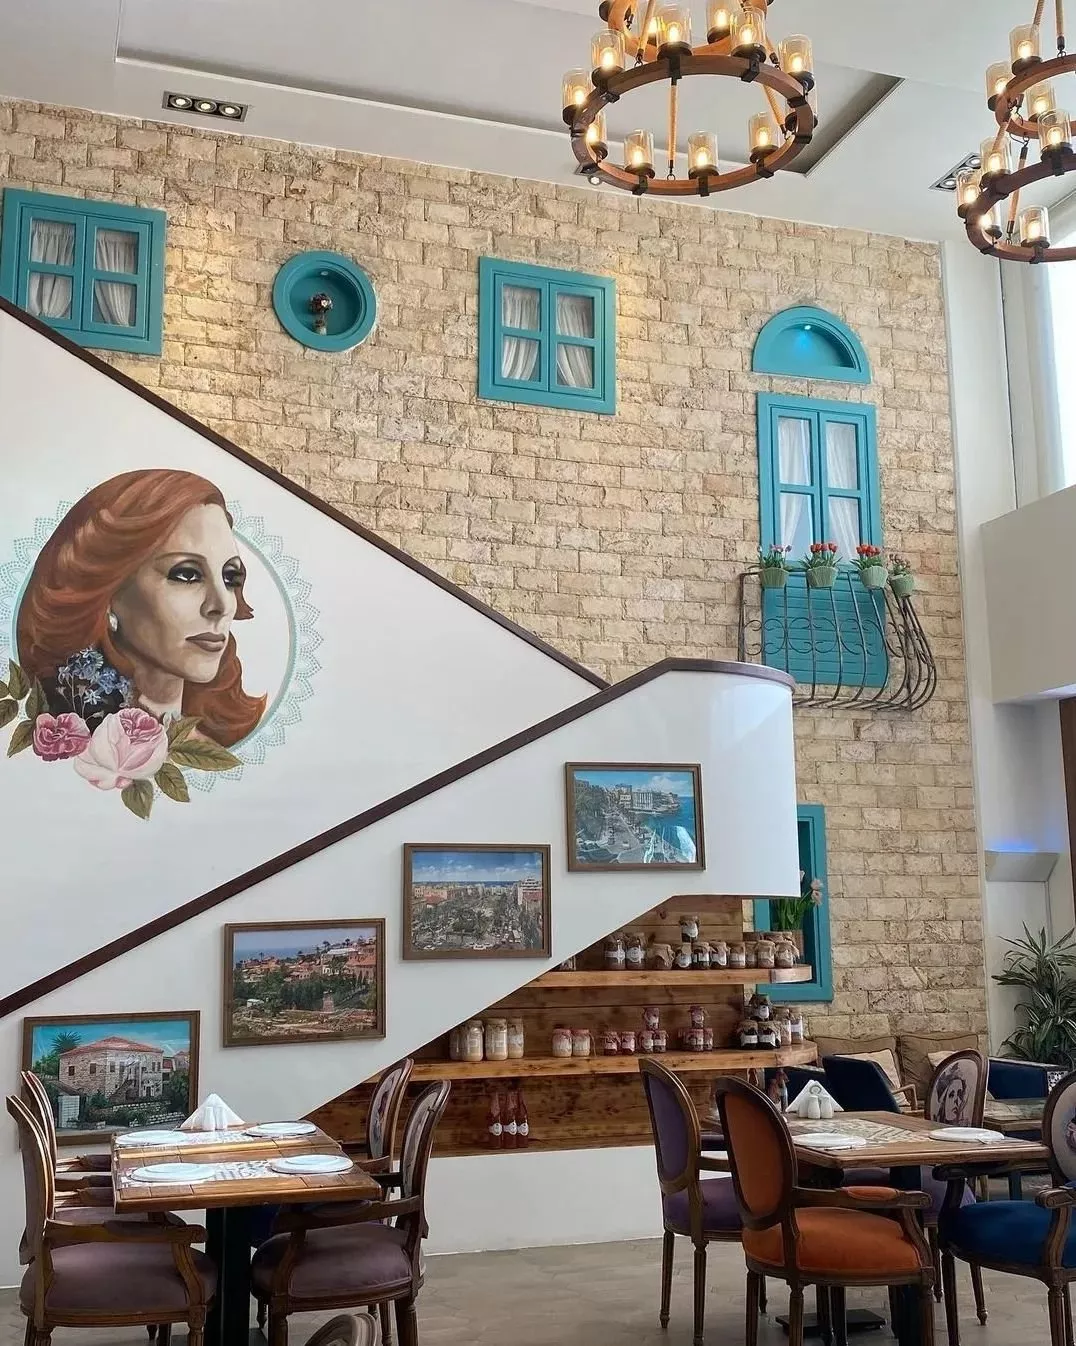 مطاعم وكافيهات في جدة تعرض مباريات كاس العالم قطر 2022